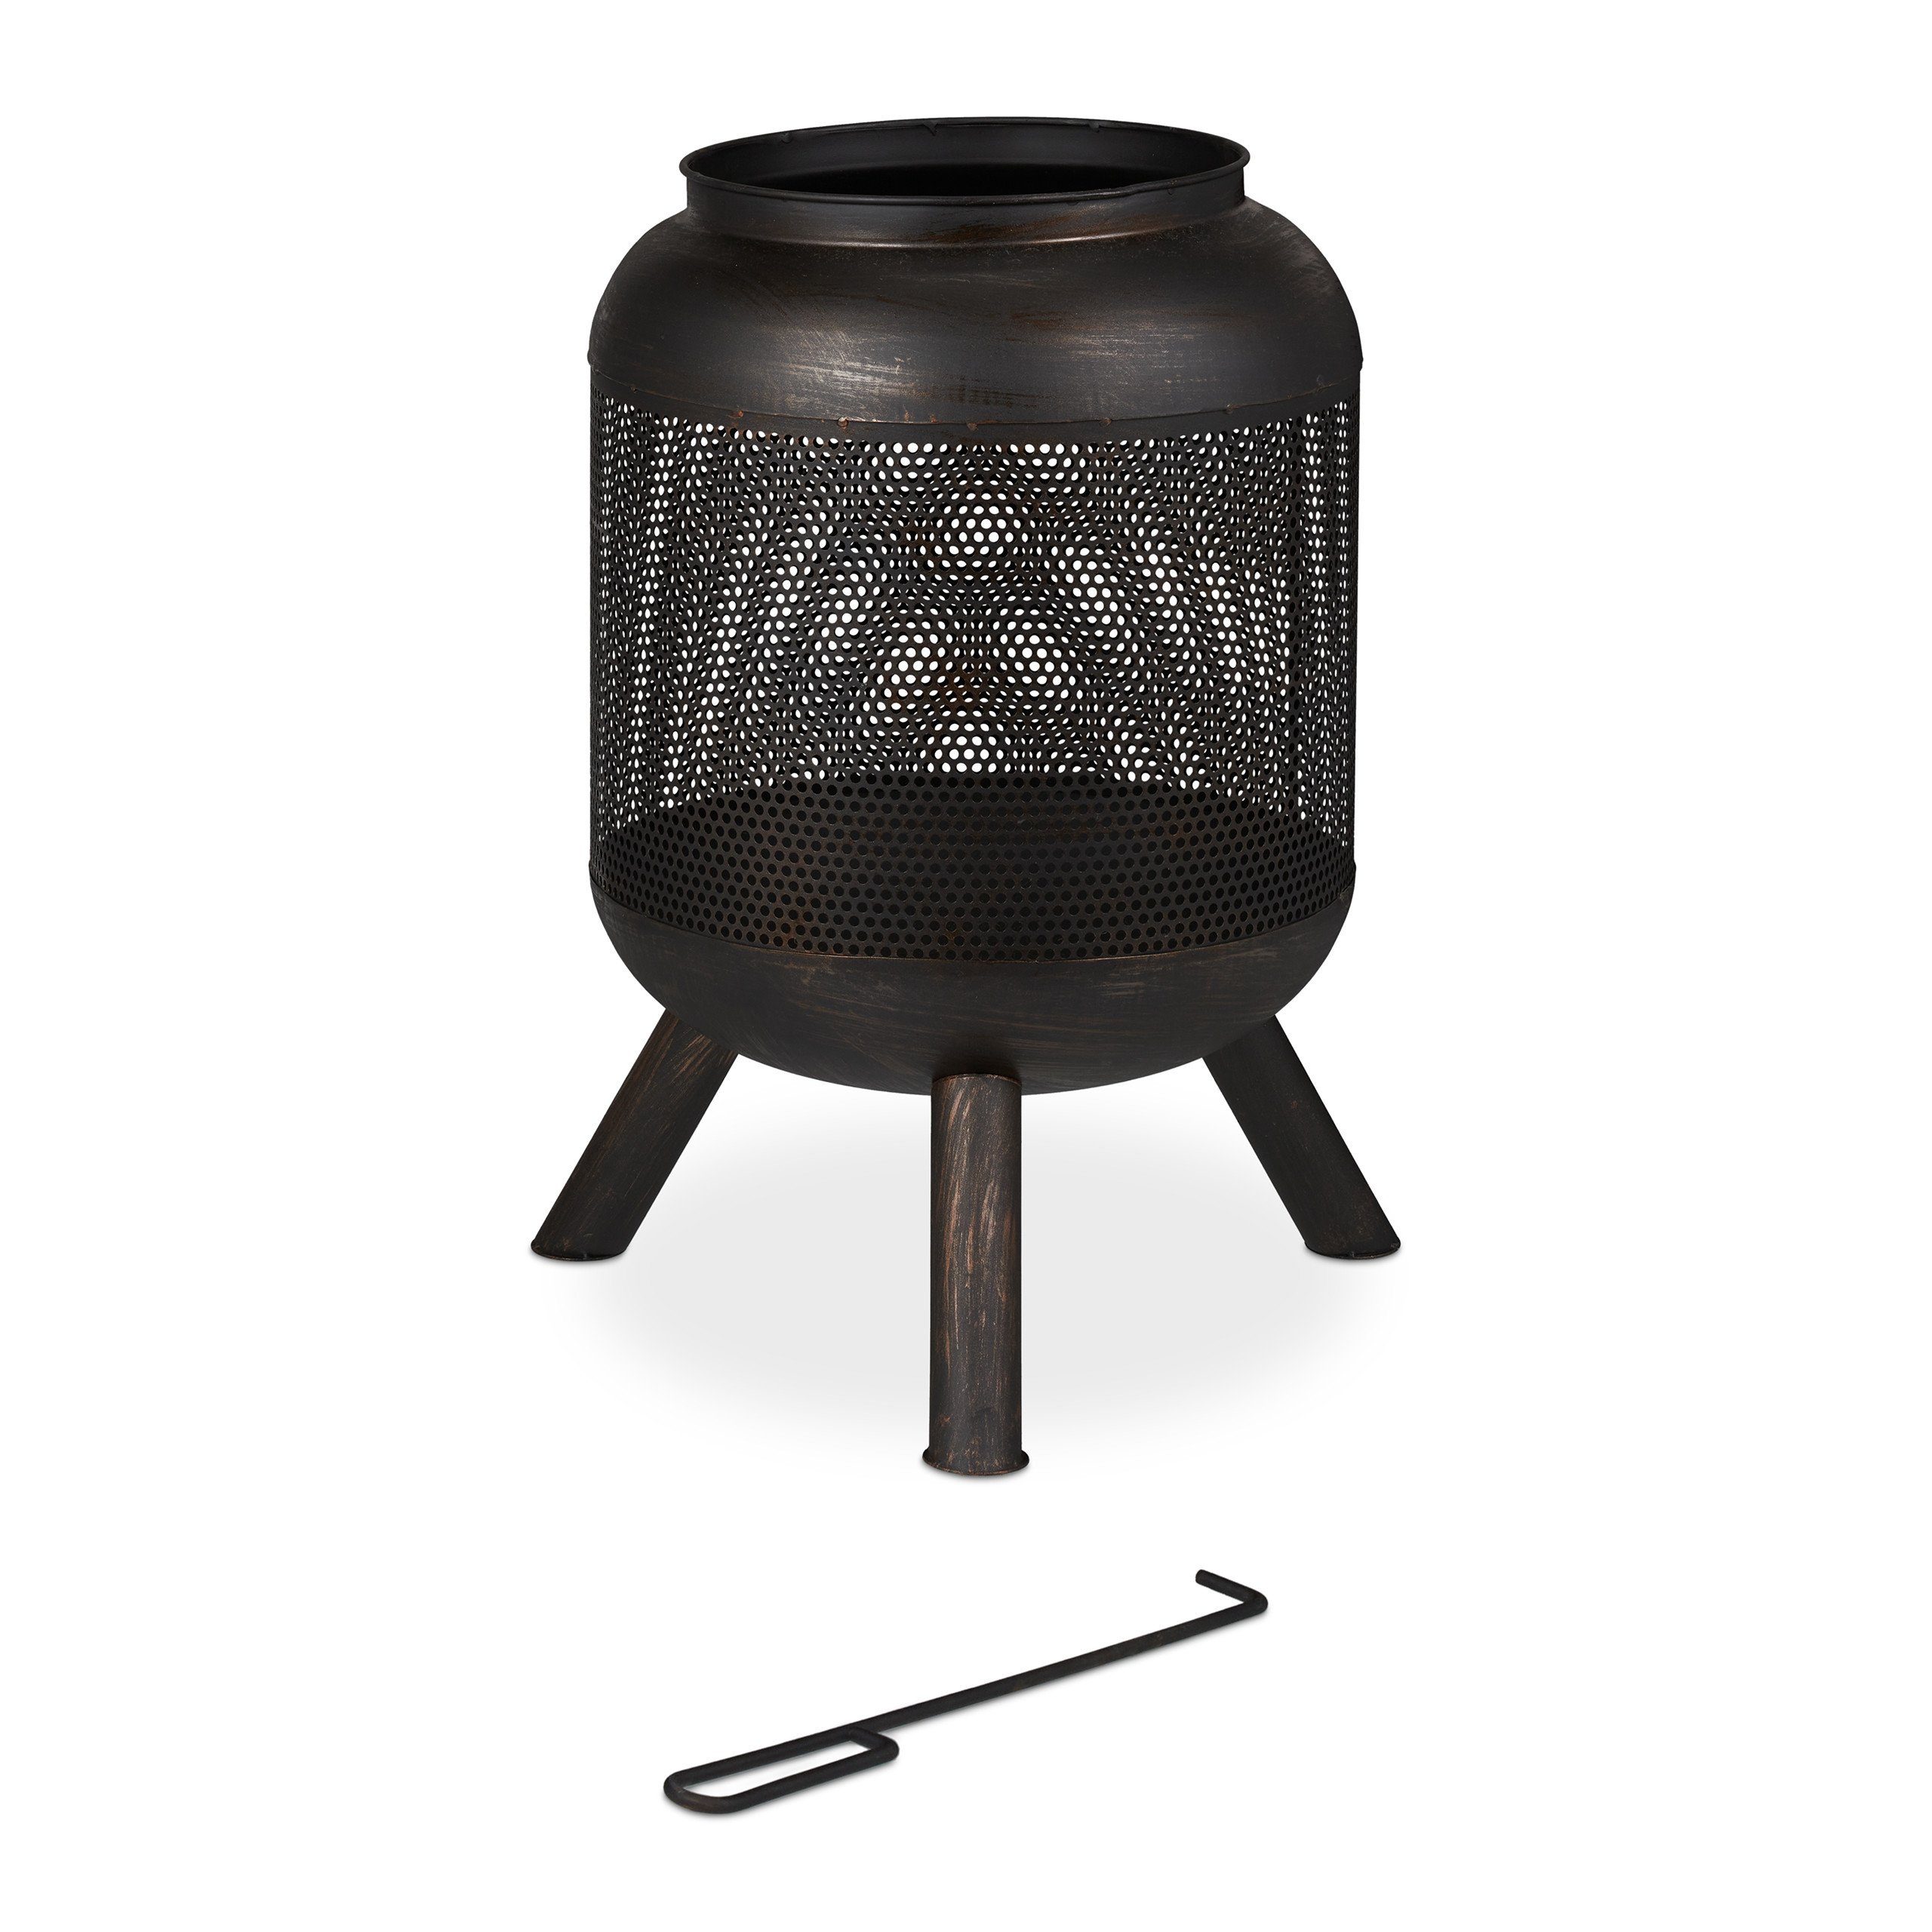 Feuerkorb Krug mit Feuerkorb relaxdays schwarz-bronze Mesh